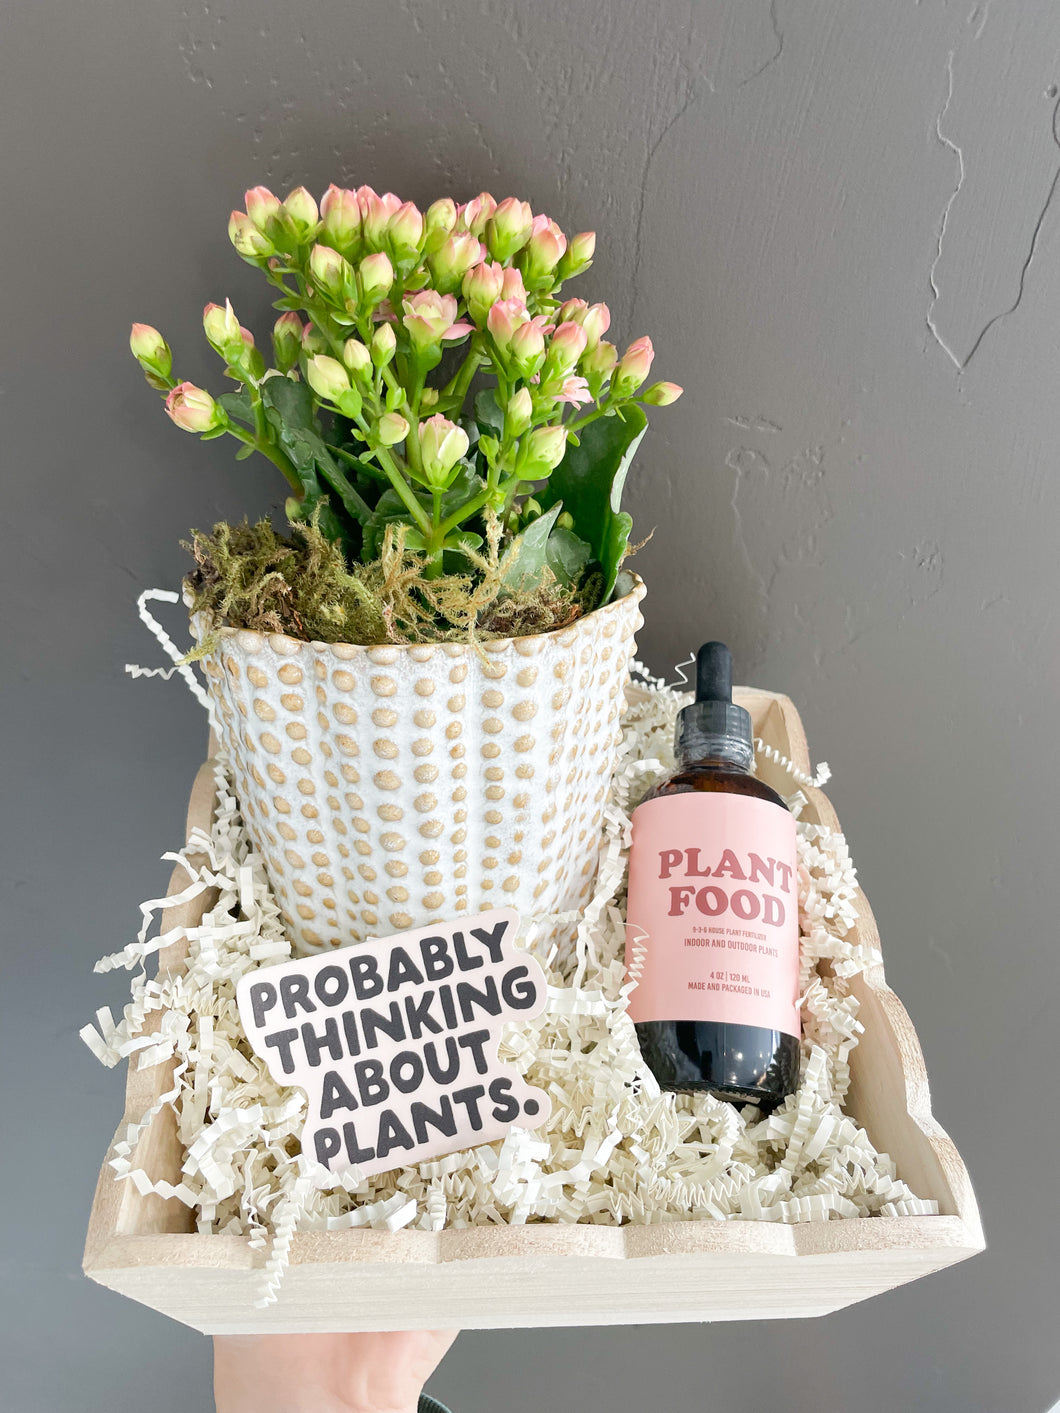 Plant Mom Gift Box